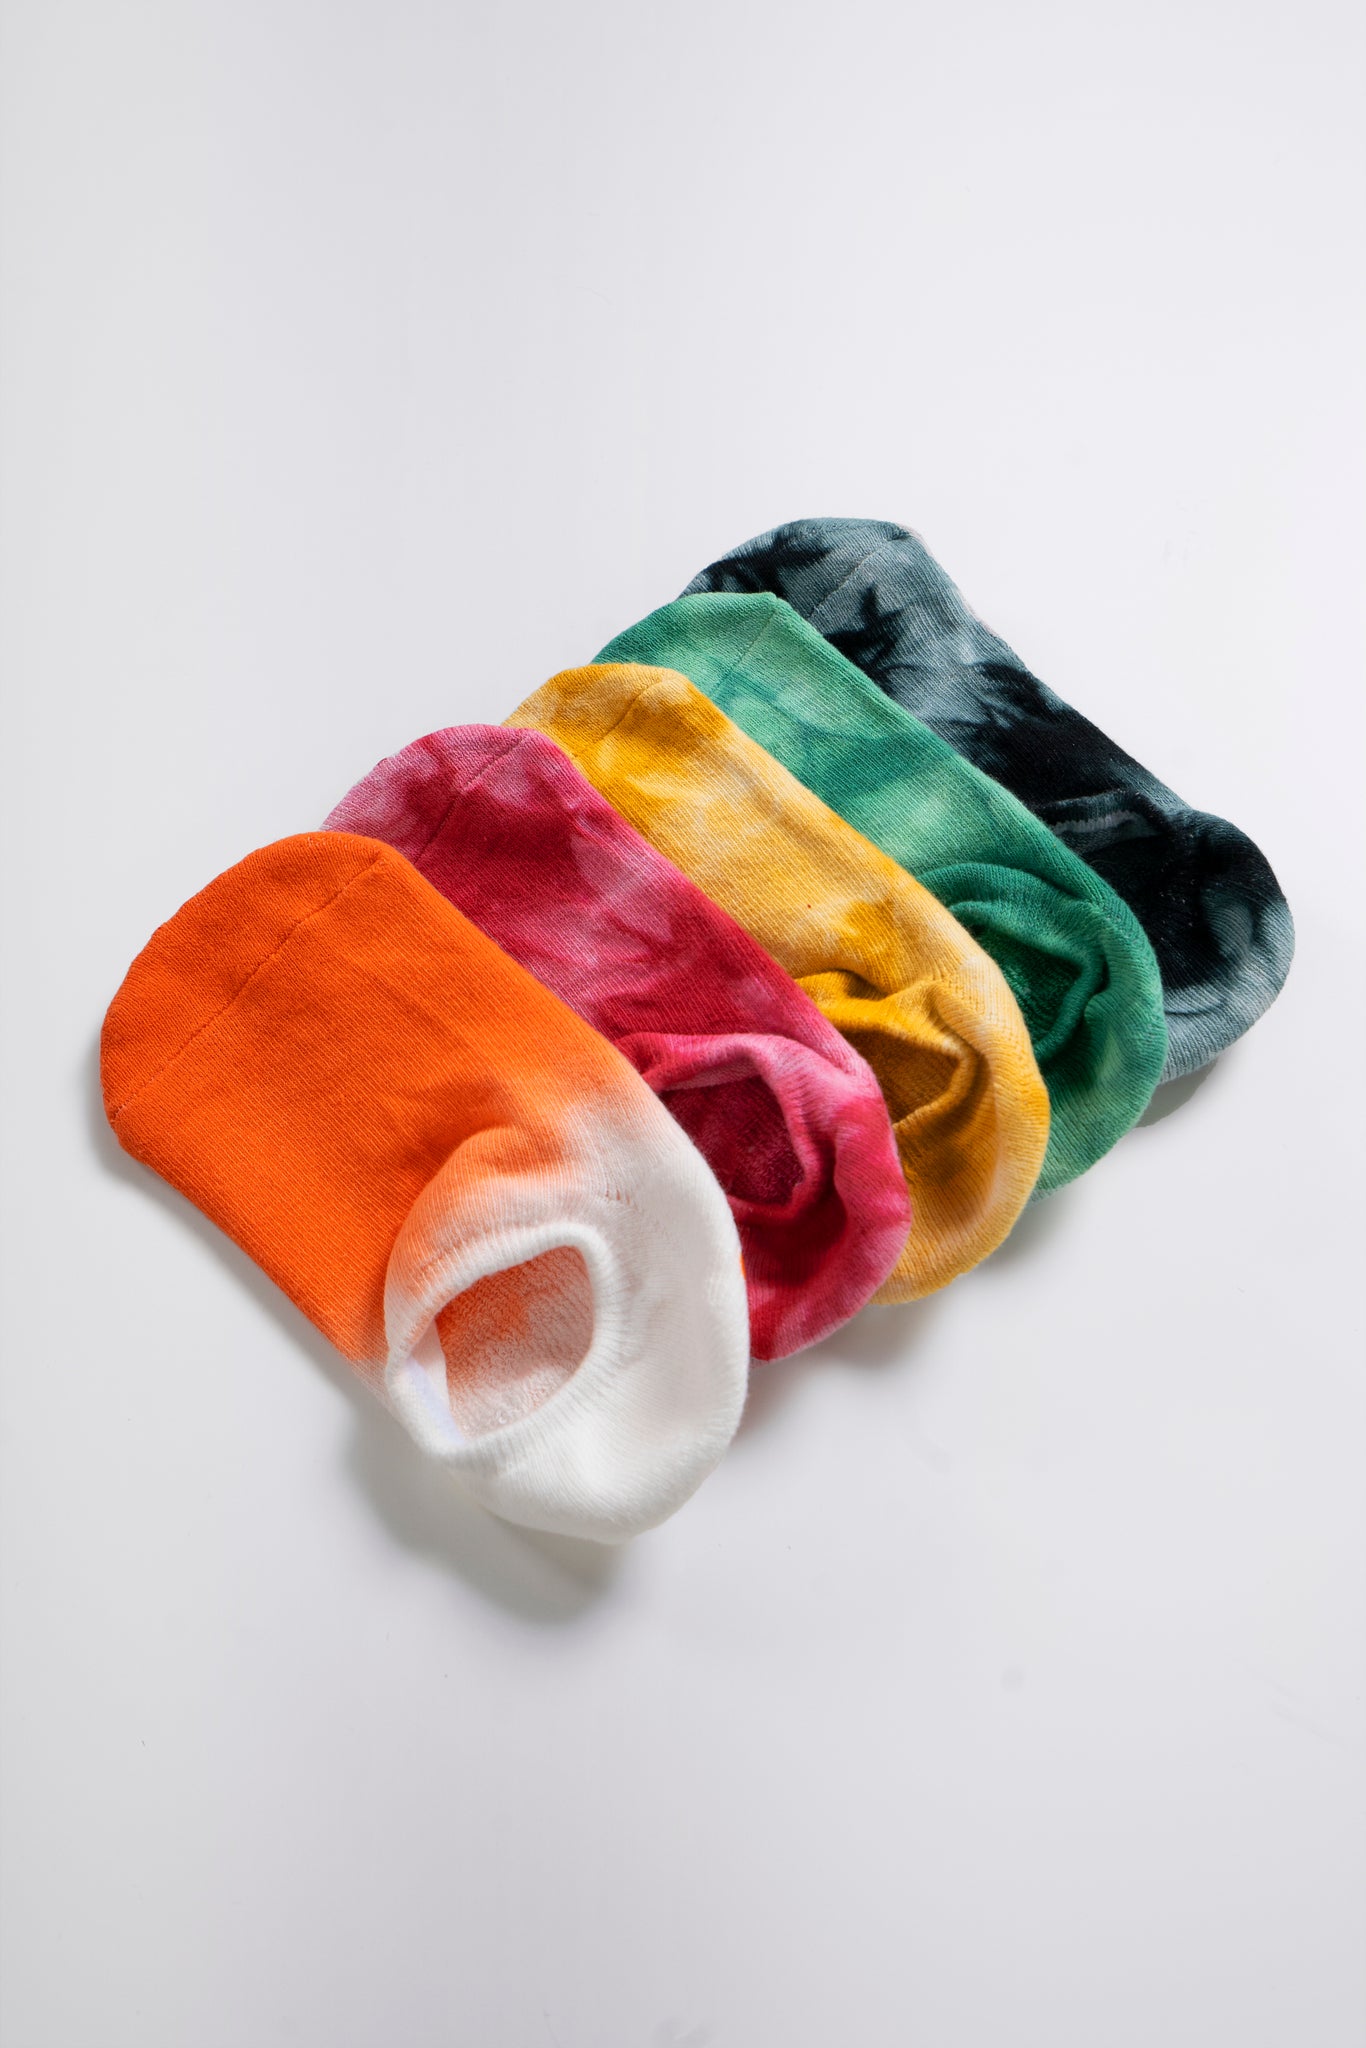 Soar Low Rise Tie-Dye Non Slip Grip Socks